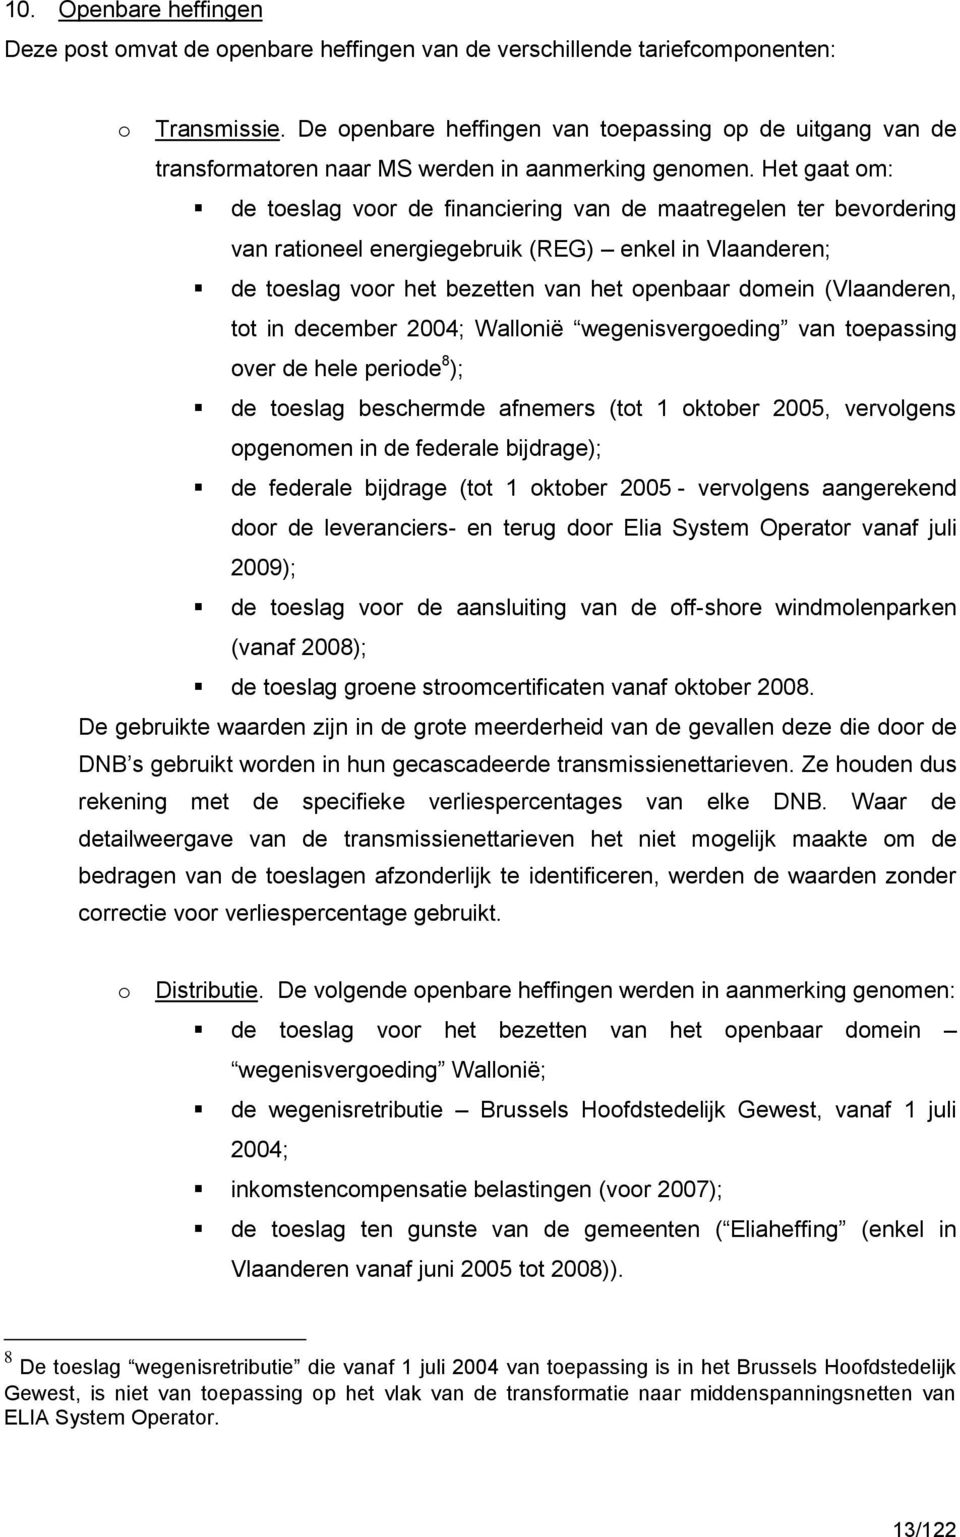 Het gaat om: de toeslag voor de financiering van de maatregelen ter bevordering van rationeel energiegebruik (REG) enkel in Vlaanderen; de toeslag voor het bezetten van het openbaar domein